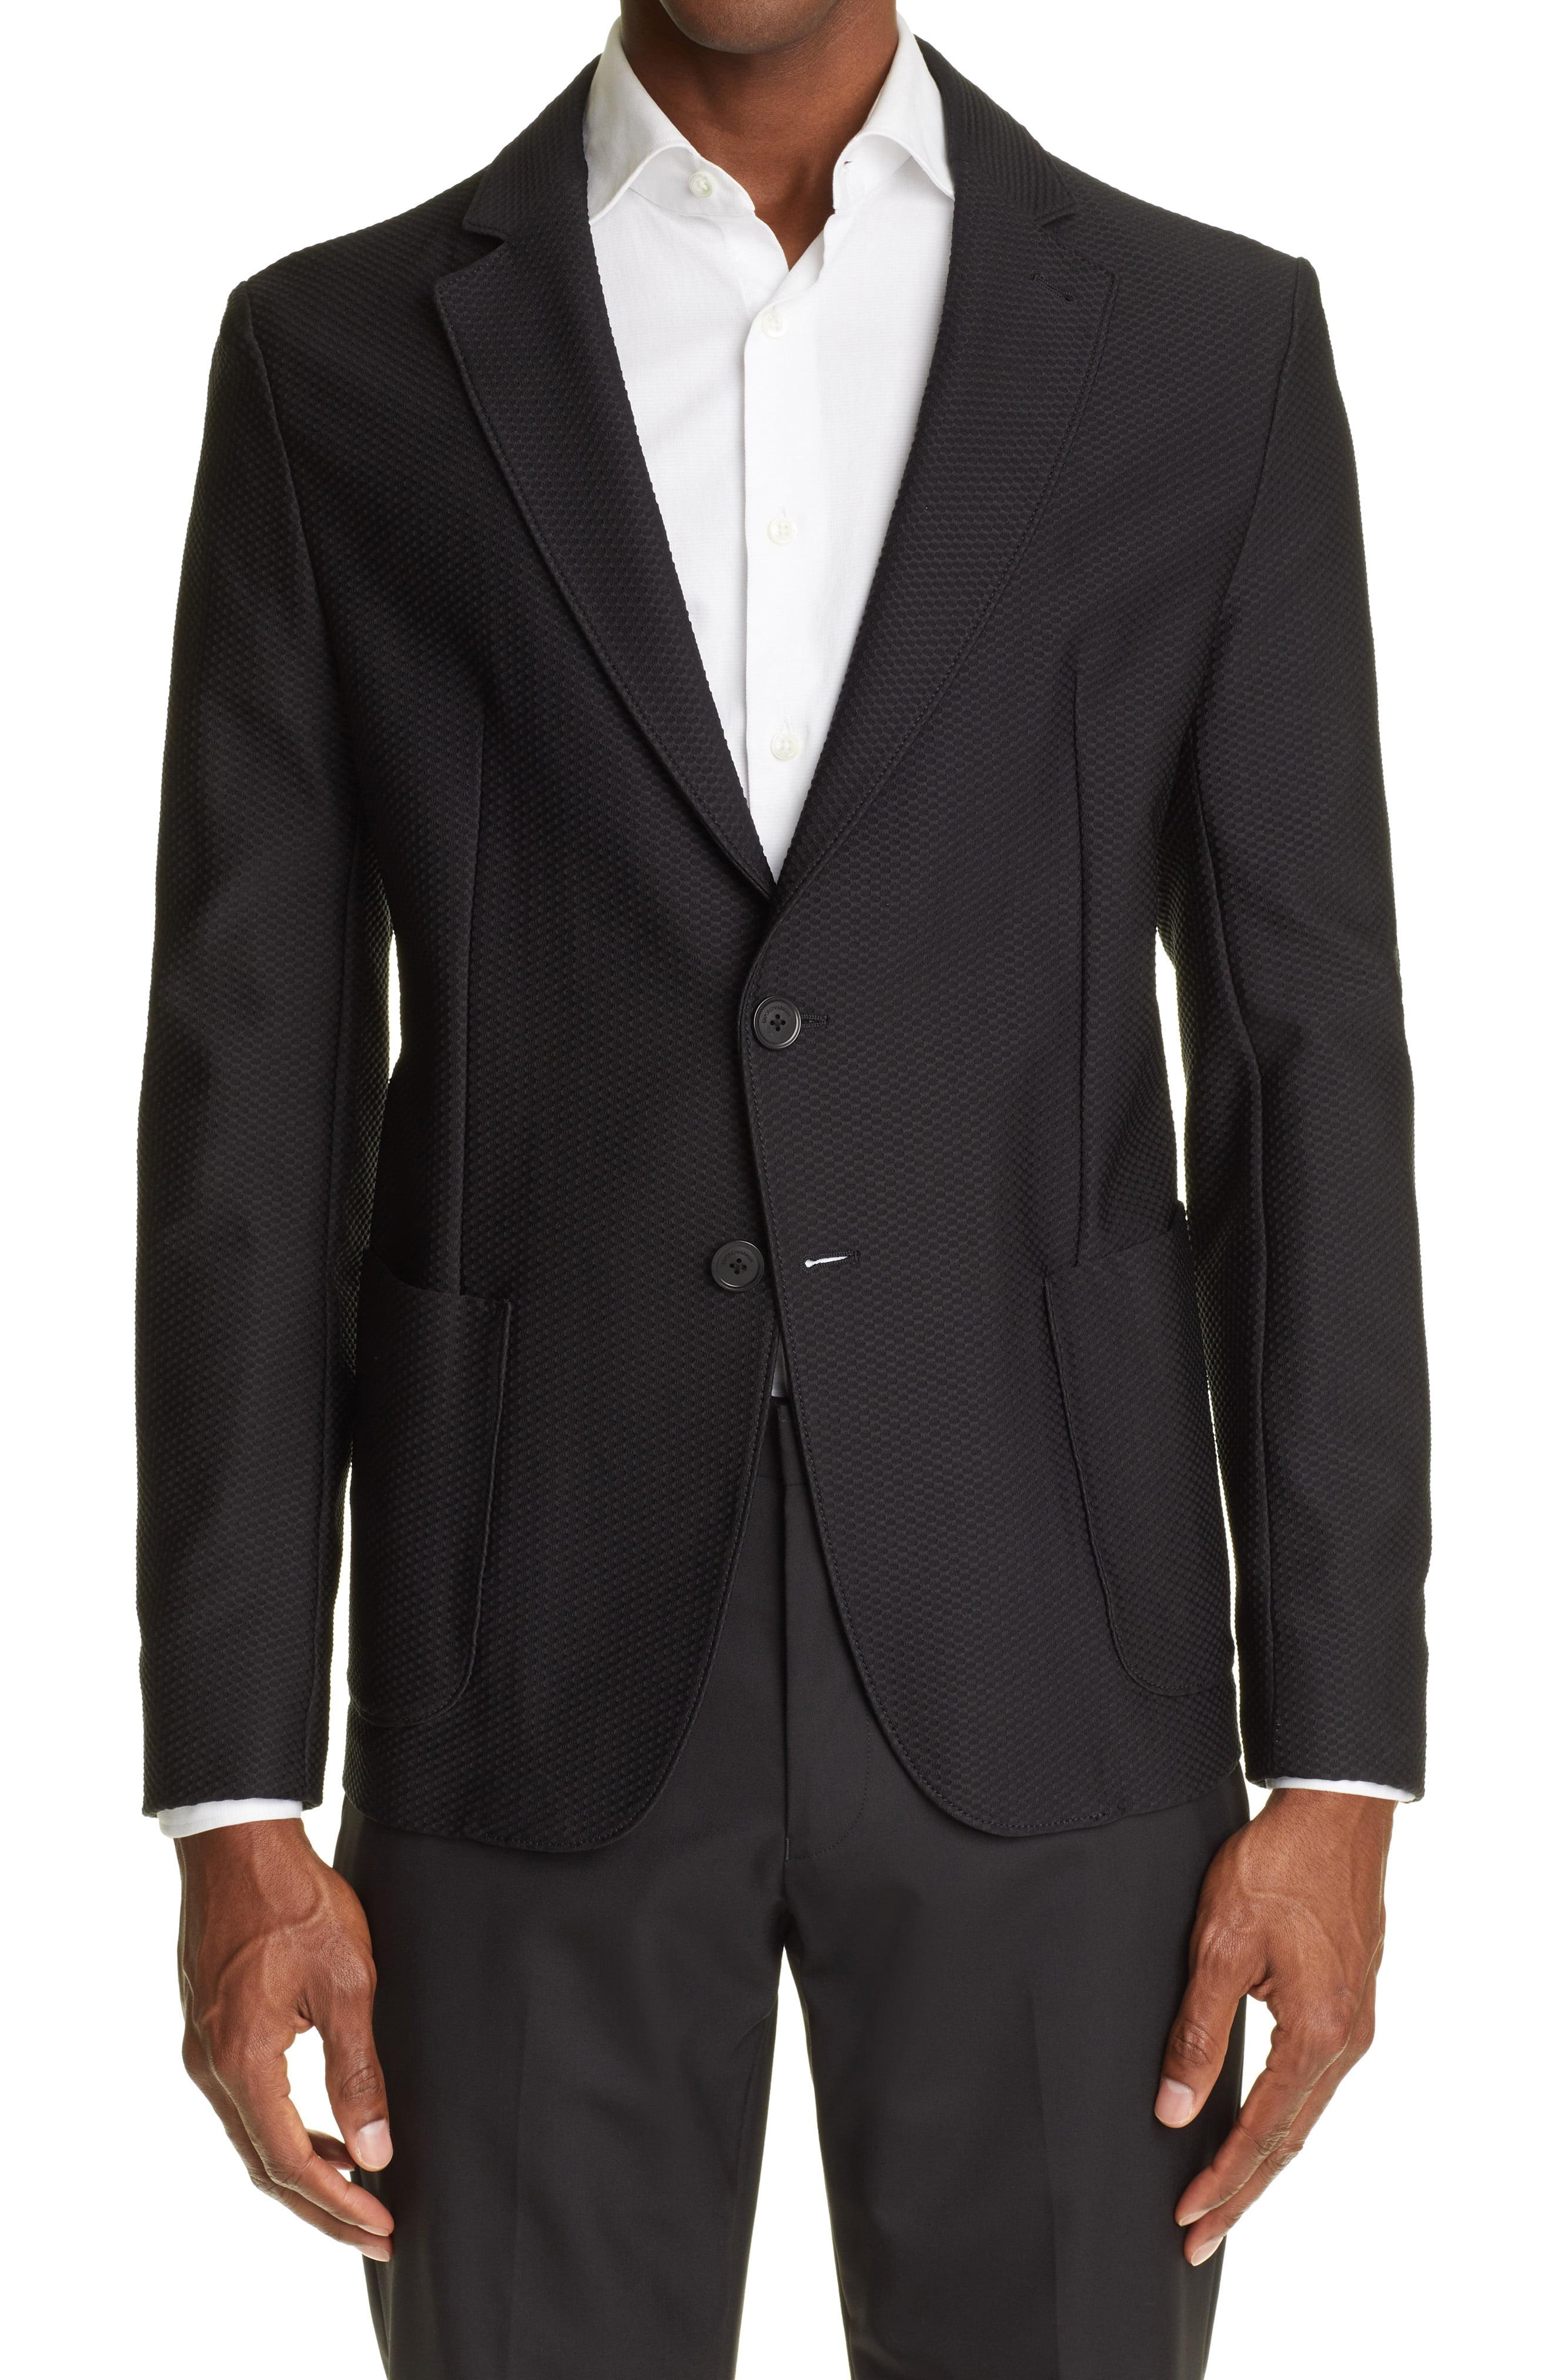 Emporio Armani Rice Stitch Soft Sport Coat in Black for Men - Lyst